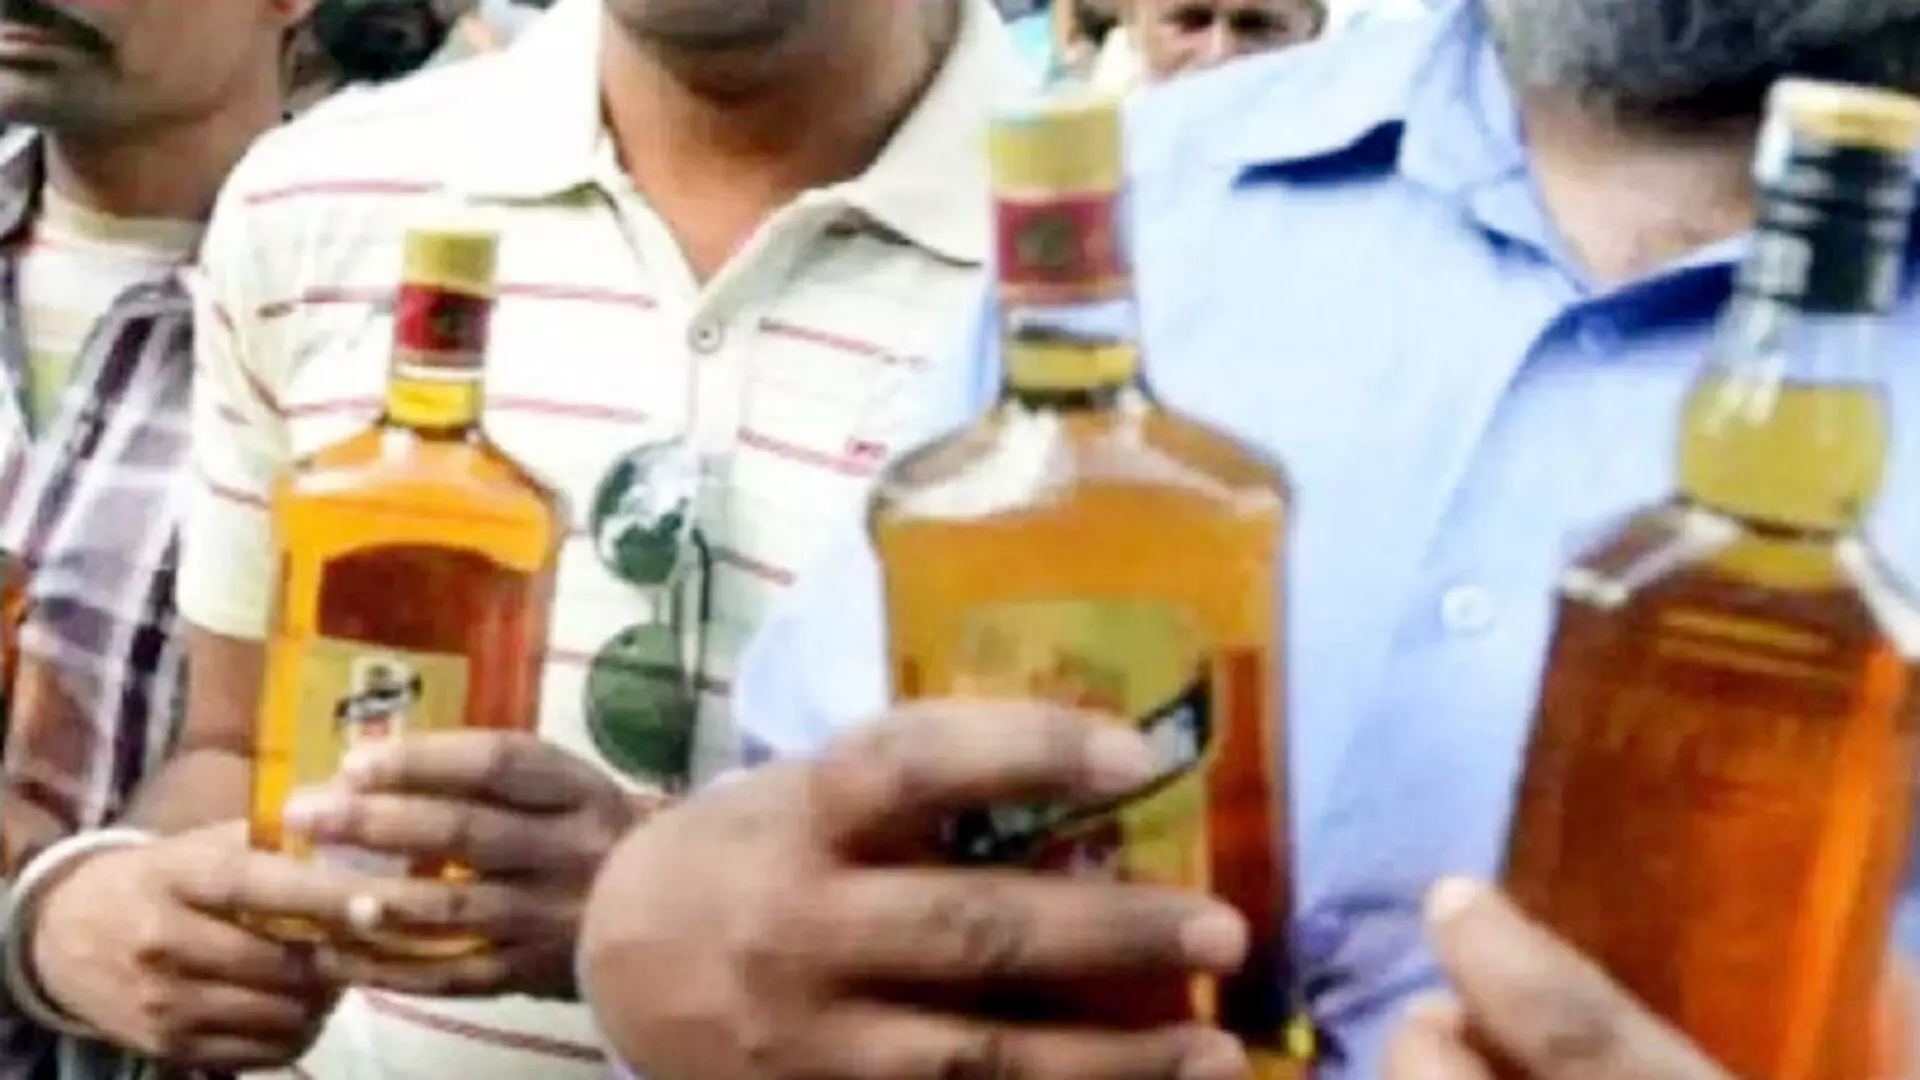 11 करोड़ रुपए से अधिक मूल्य की जब्ती - 1 से 28 मार्च तक पकड़ी अवैध शराब